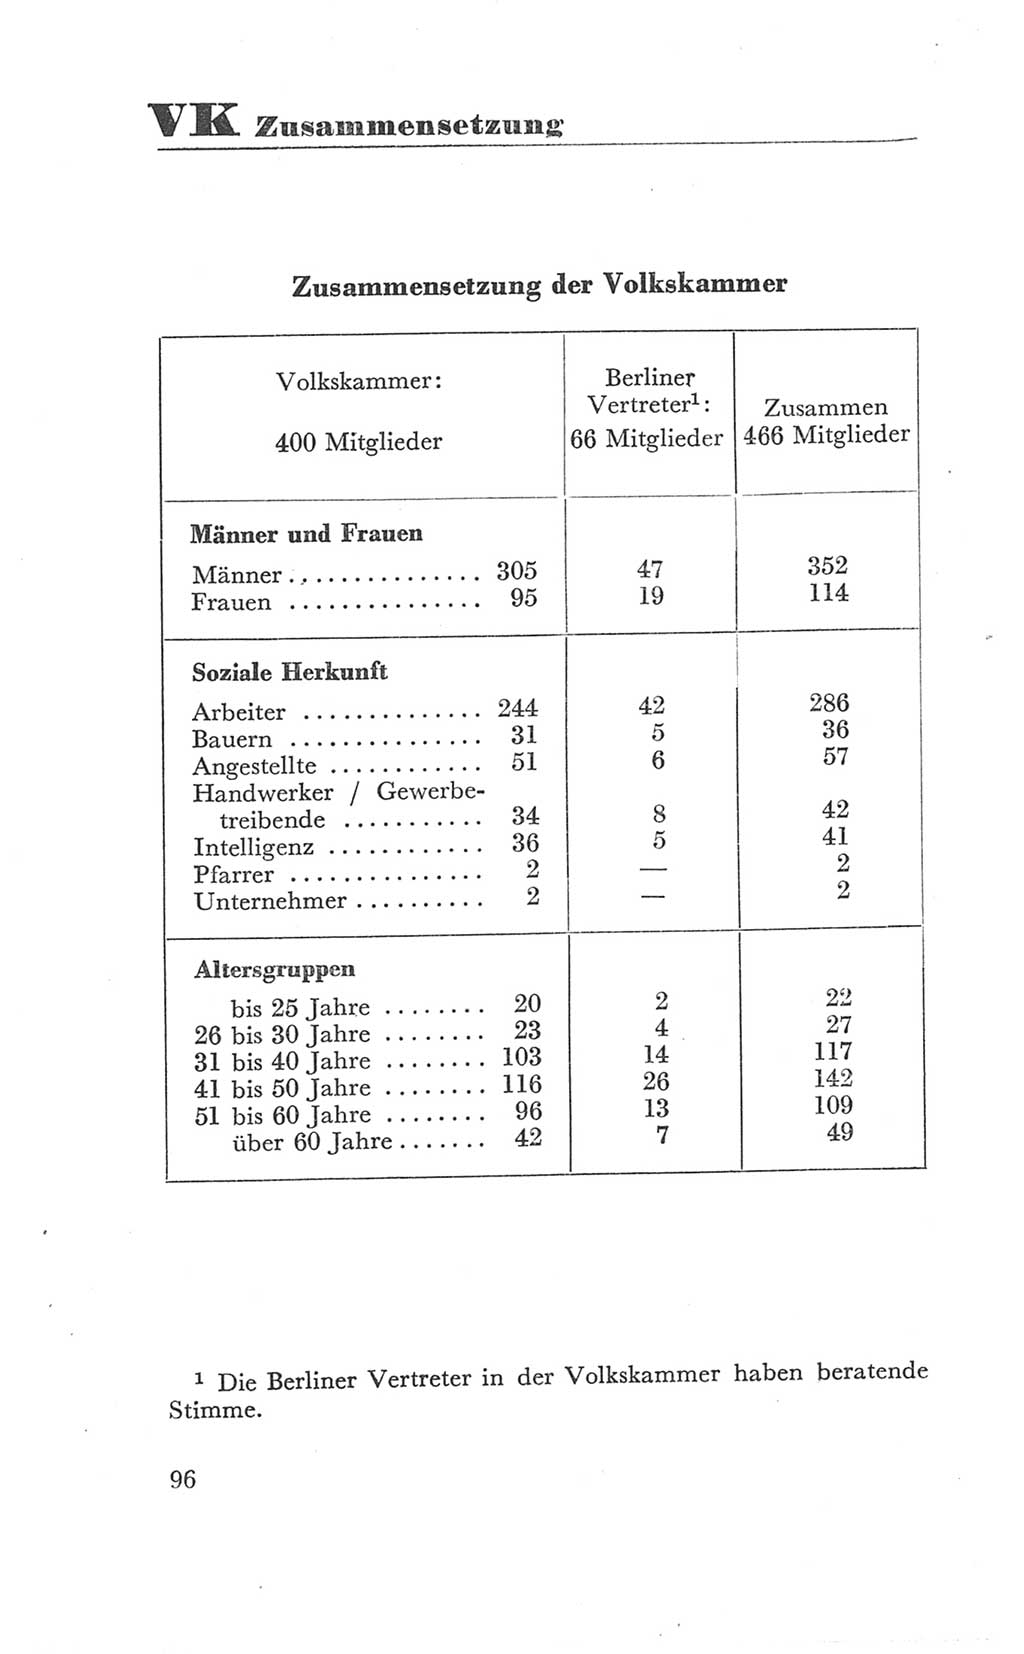 Handbuch der Volkskammer (VK) der Deutschen Demokratischen Republik (DDR), 3. Wahlperiode 1958-1963, Seite 96 (Hdb. VK. DDR 3. WP. 1958-1963, S. 96)